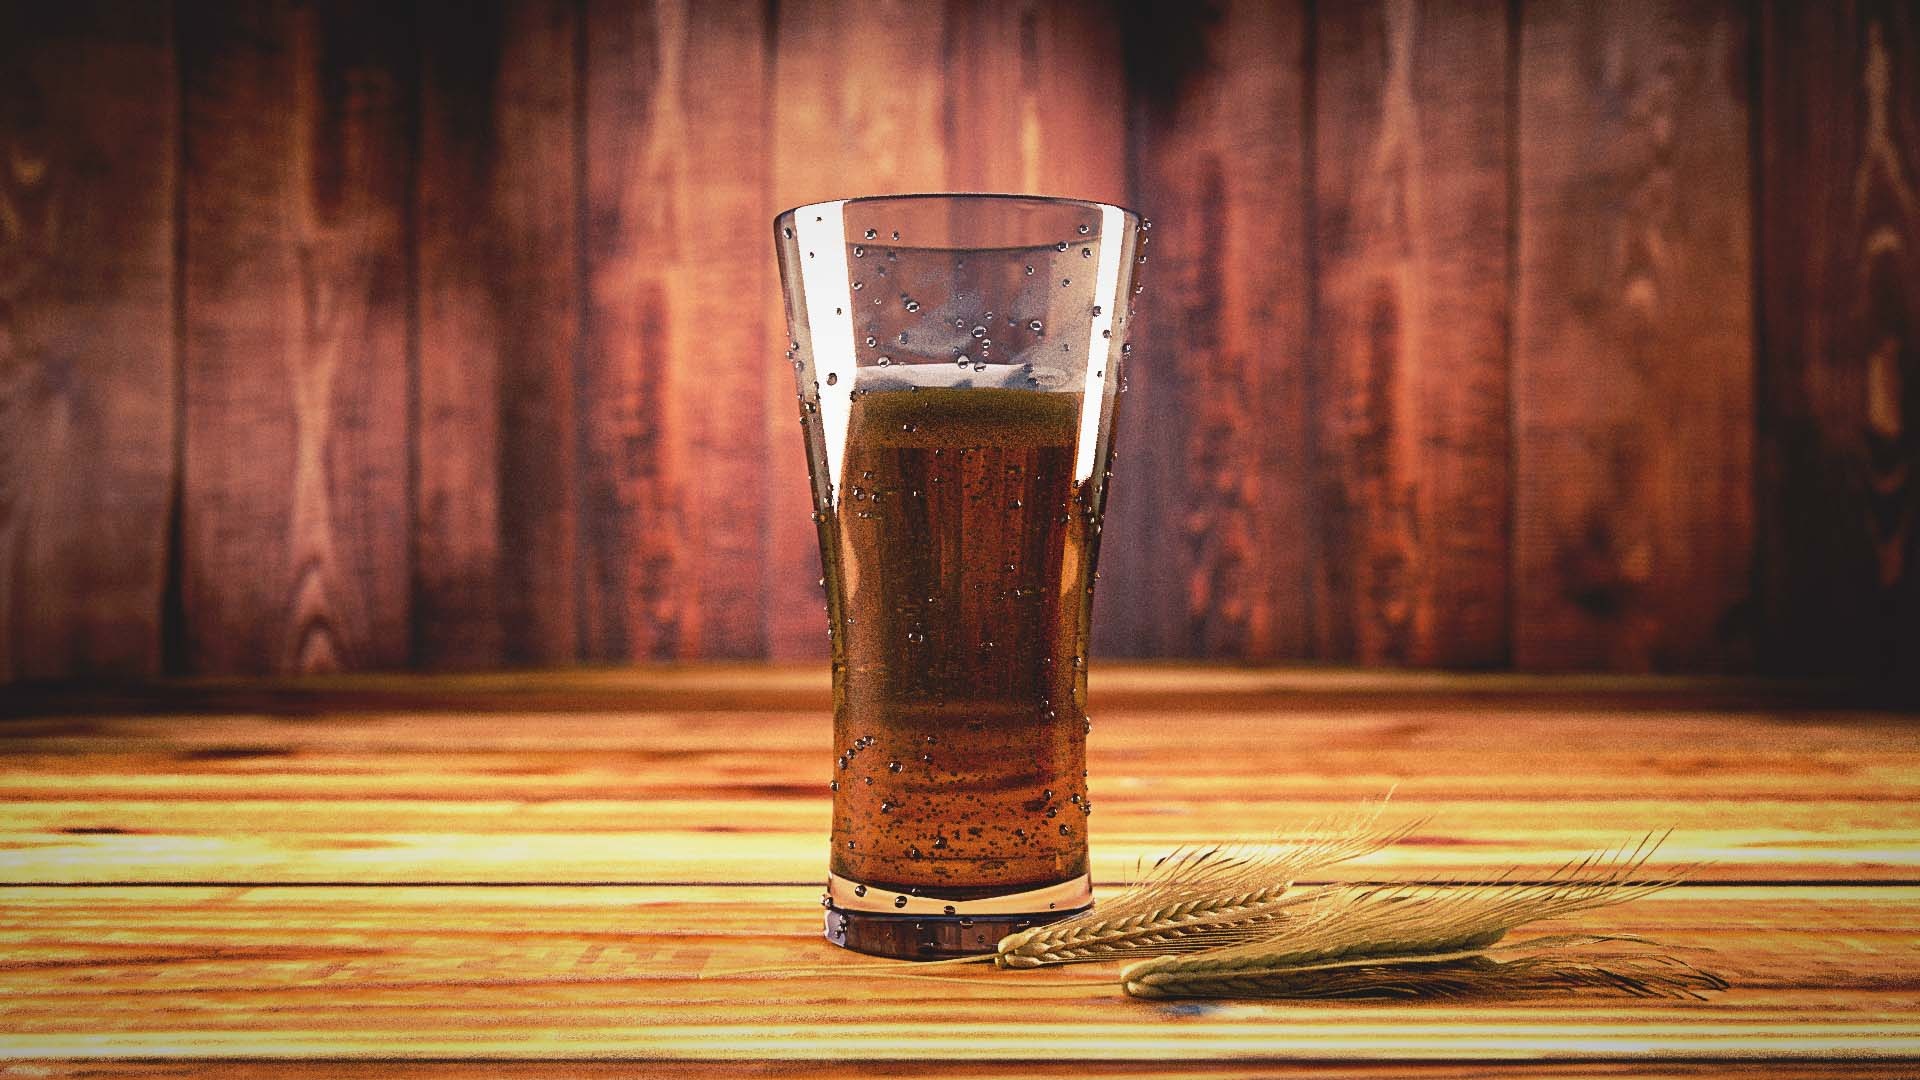 Irish Red Ale Beer Recipe D.I.Y.